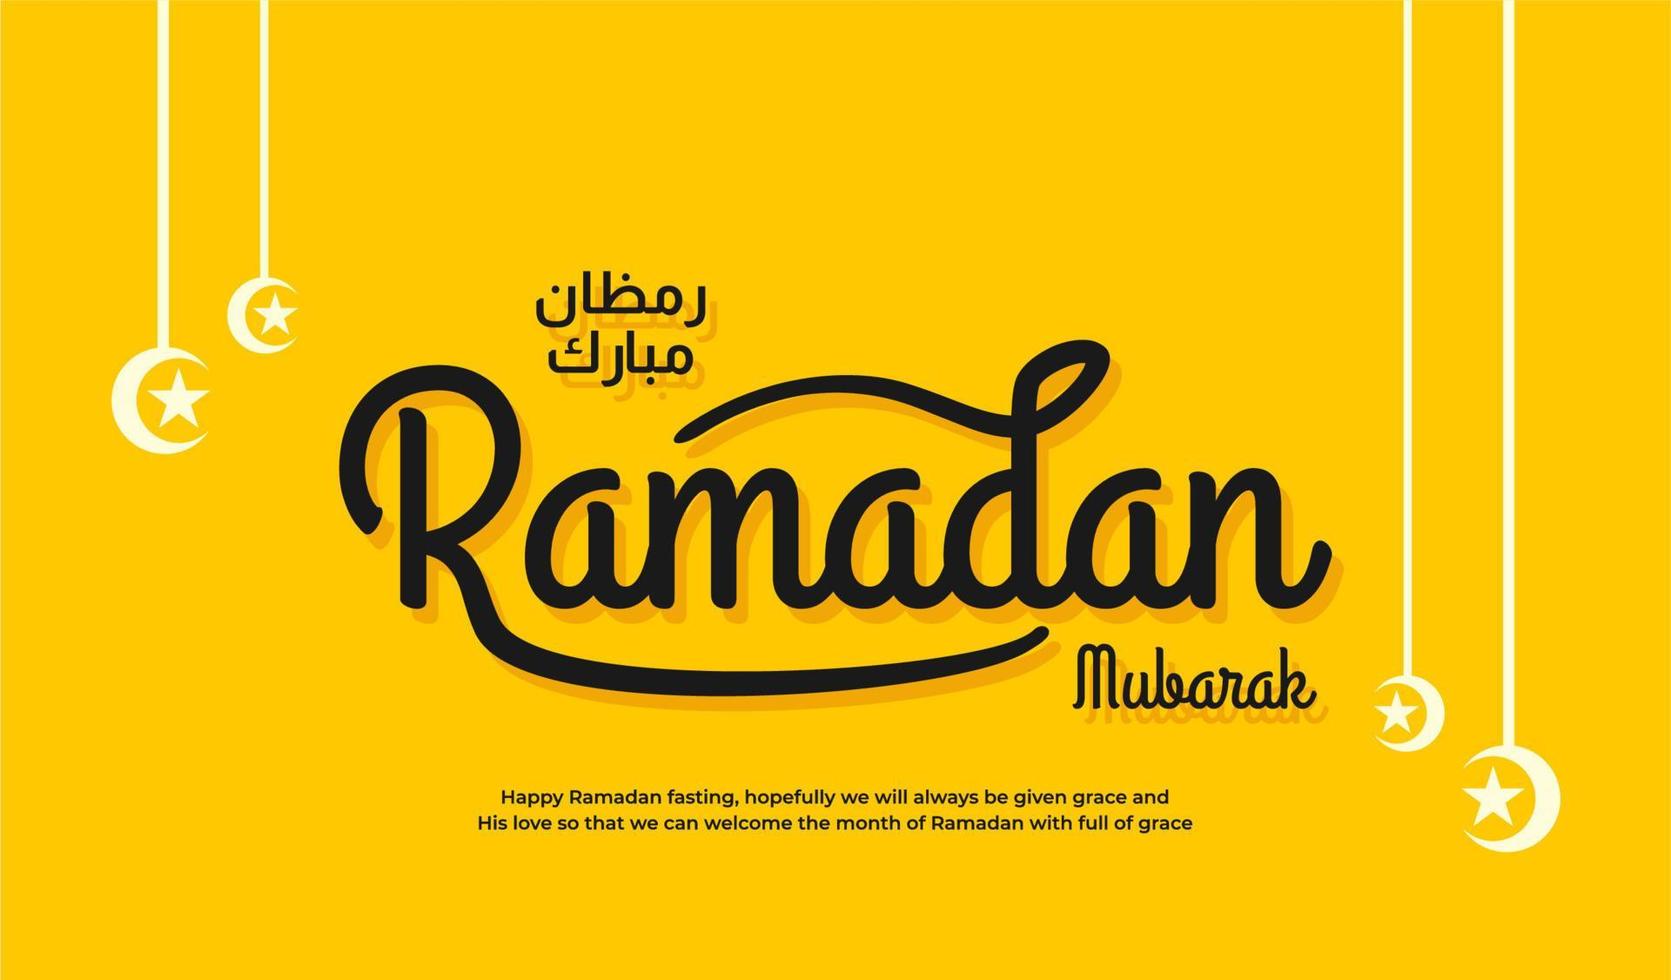 Ramadan mubarak belettering achtergrond geel elegant vector